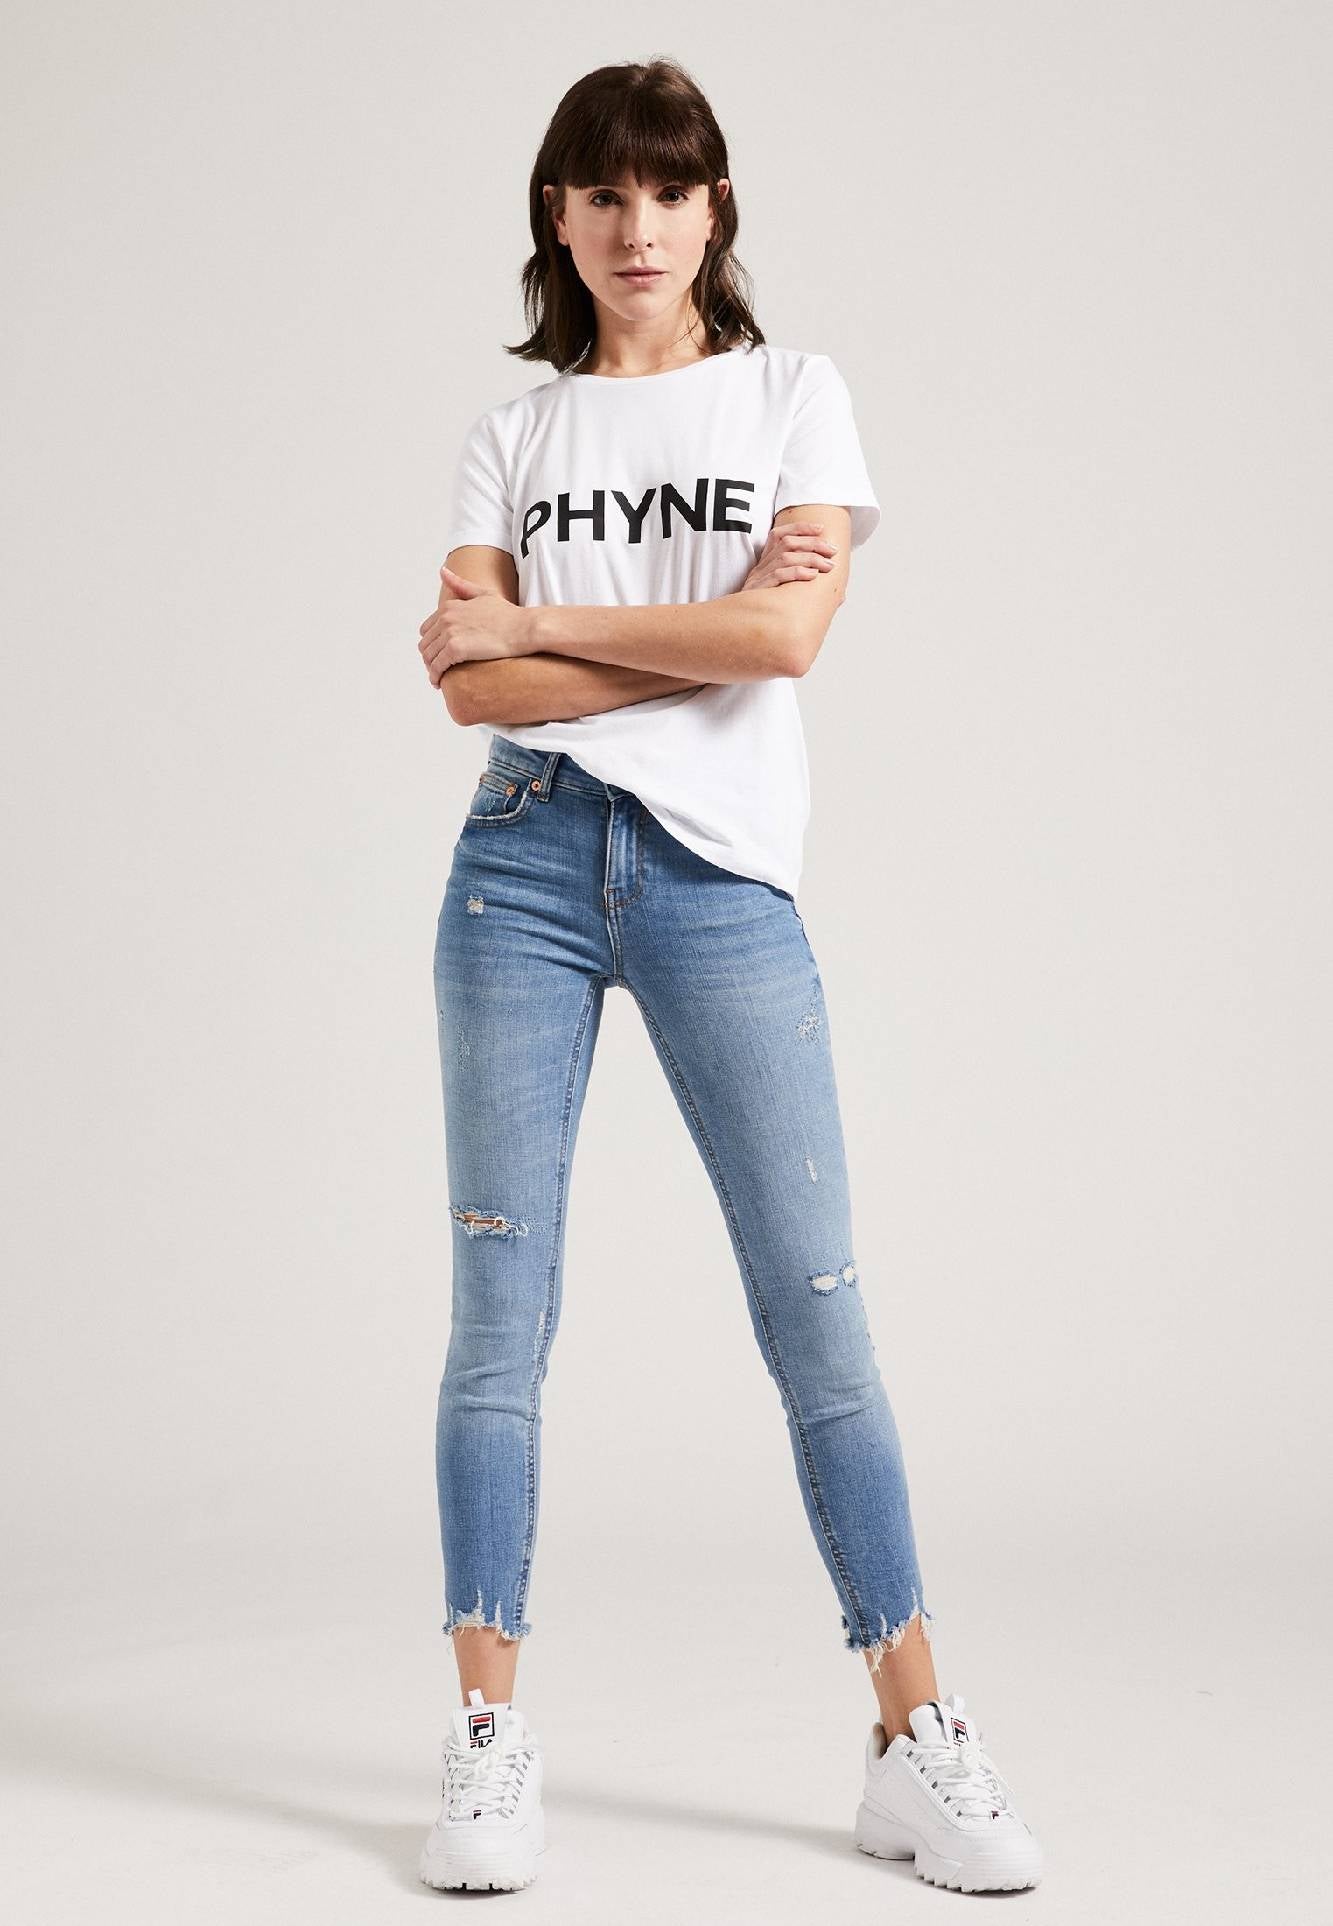 The PHYNE T-Shirt